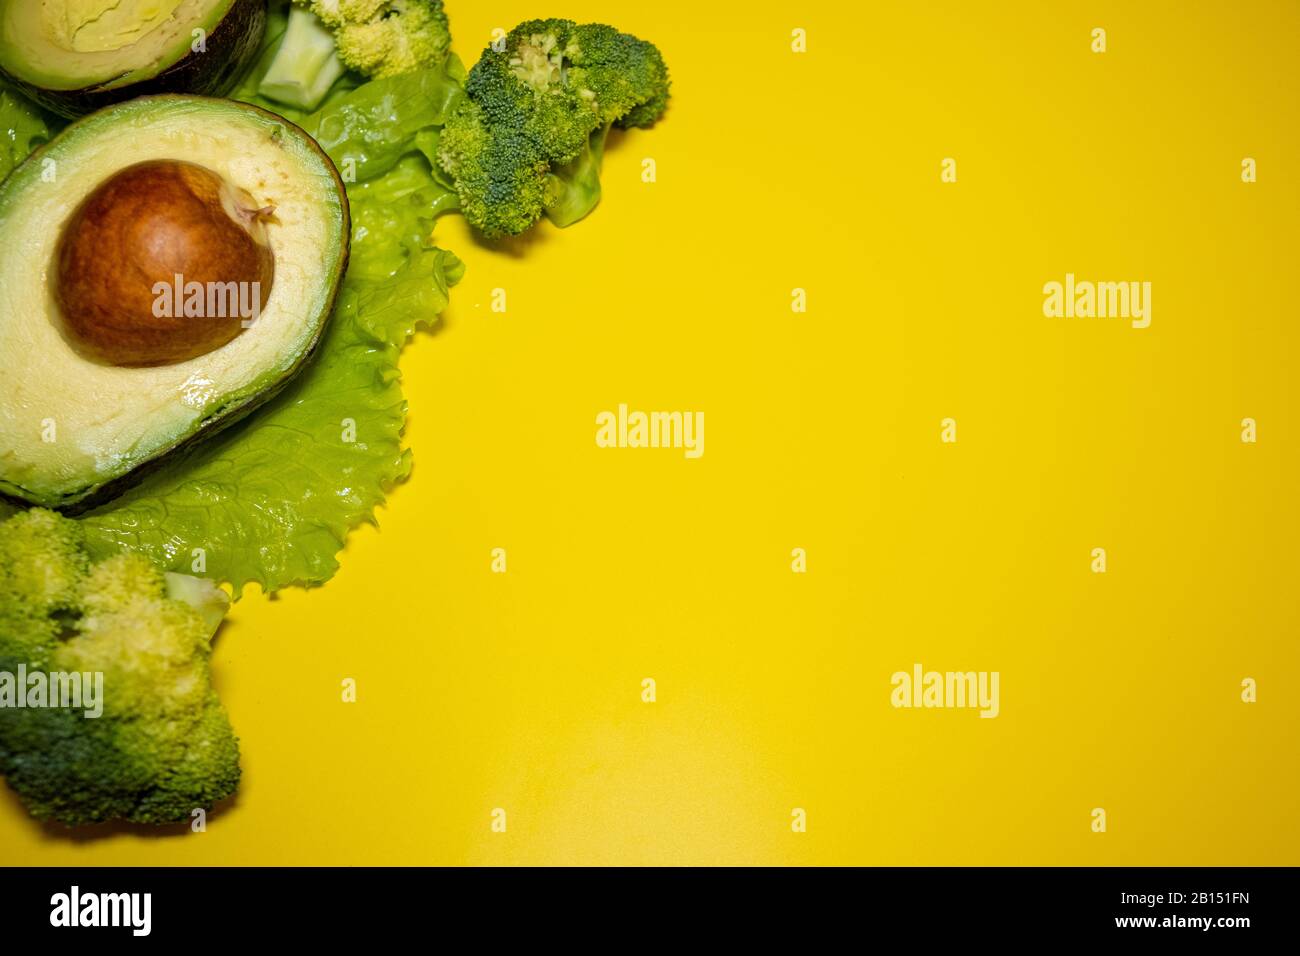 Avocado, lattuga verde, broccoli su sfondo giallo brillante. Concetto di alimentazione sana. Vista dall'alto. Spazio di copia Foto Stock